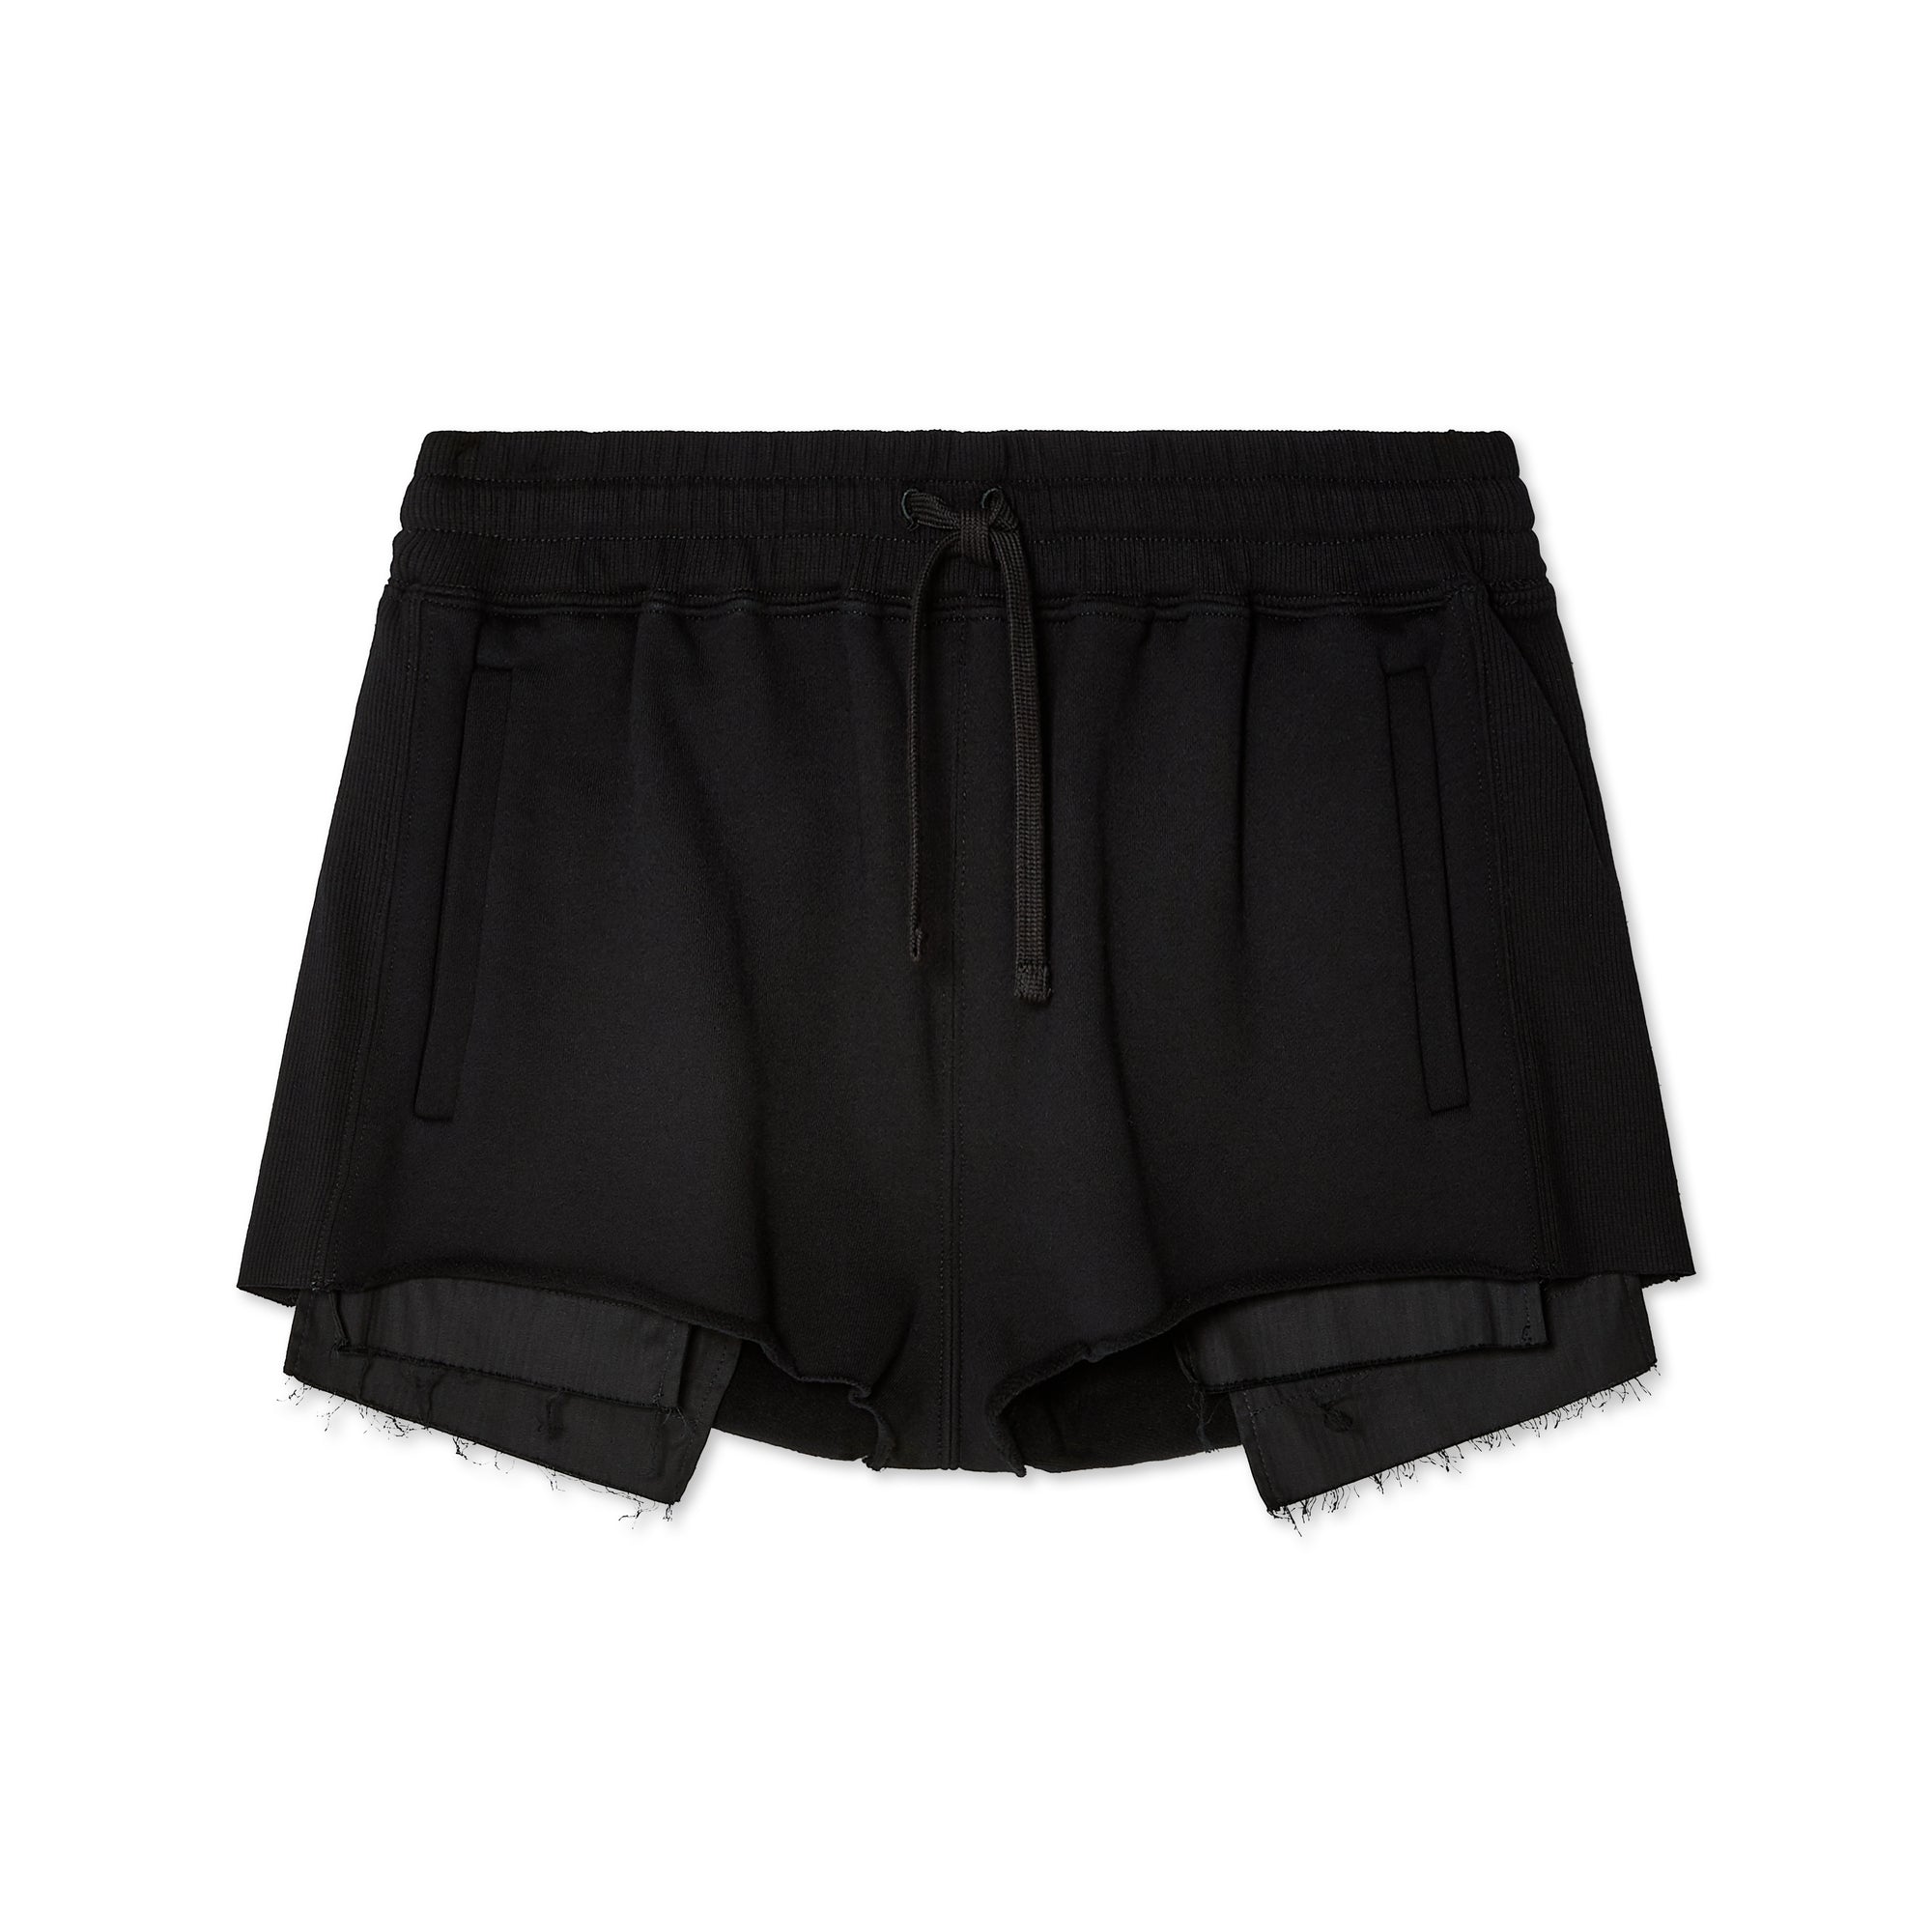 Miu Miu - Women's Shorts - (Black) view 1